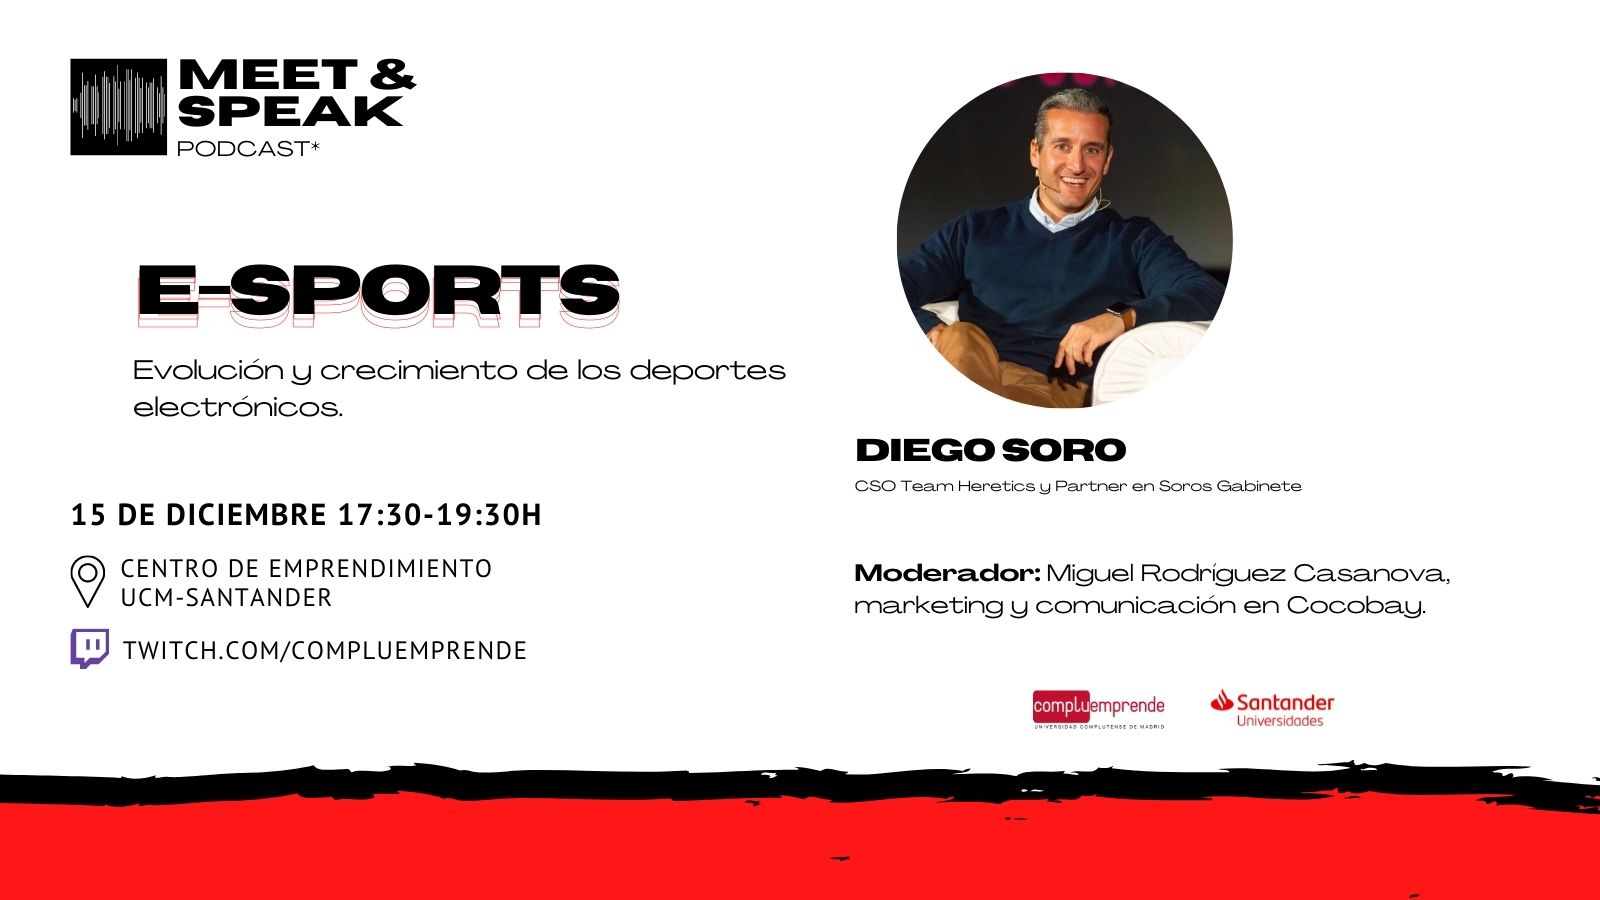 MEET & SPEAK - E-SPORTS con Diego Soro.